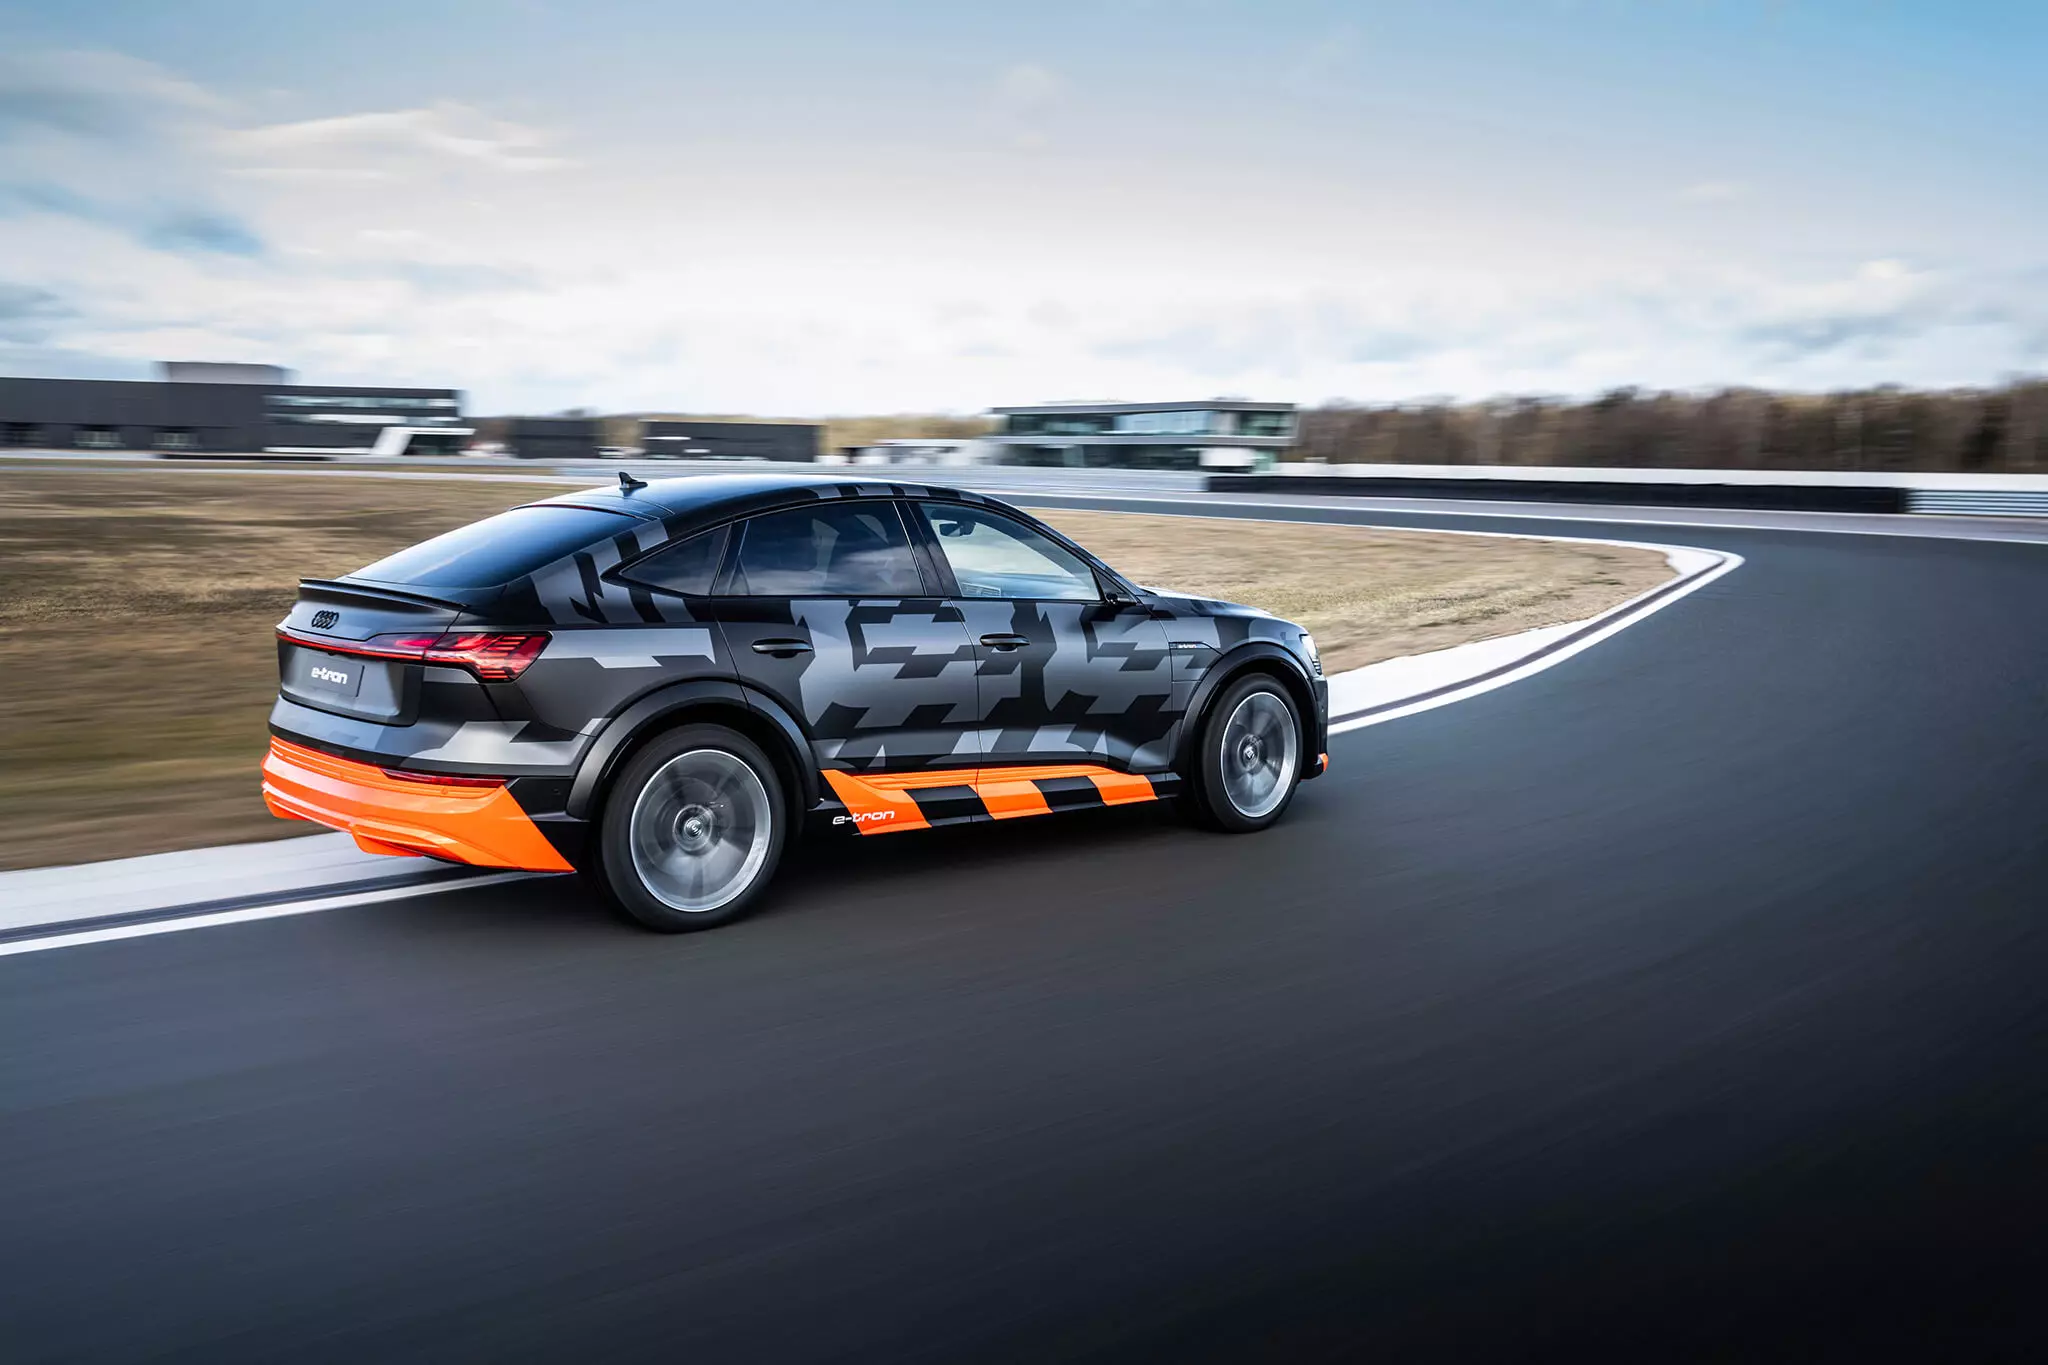 រថយន្ត Audi e-tron S Sportback